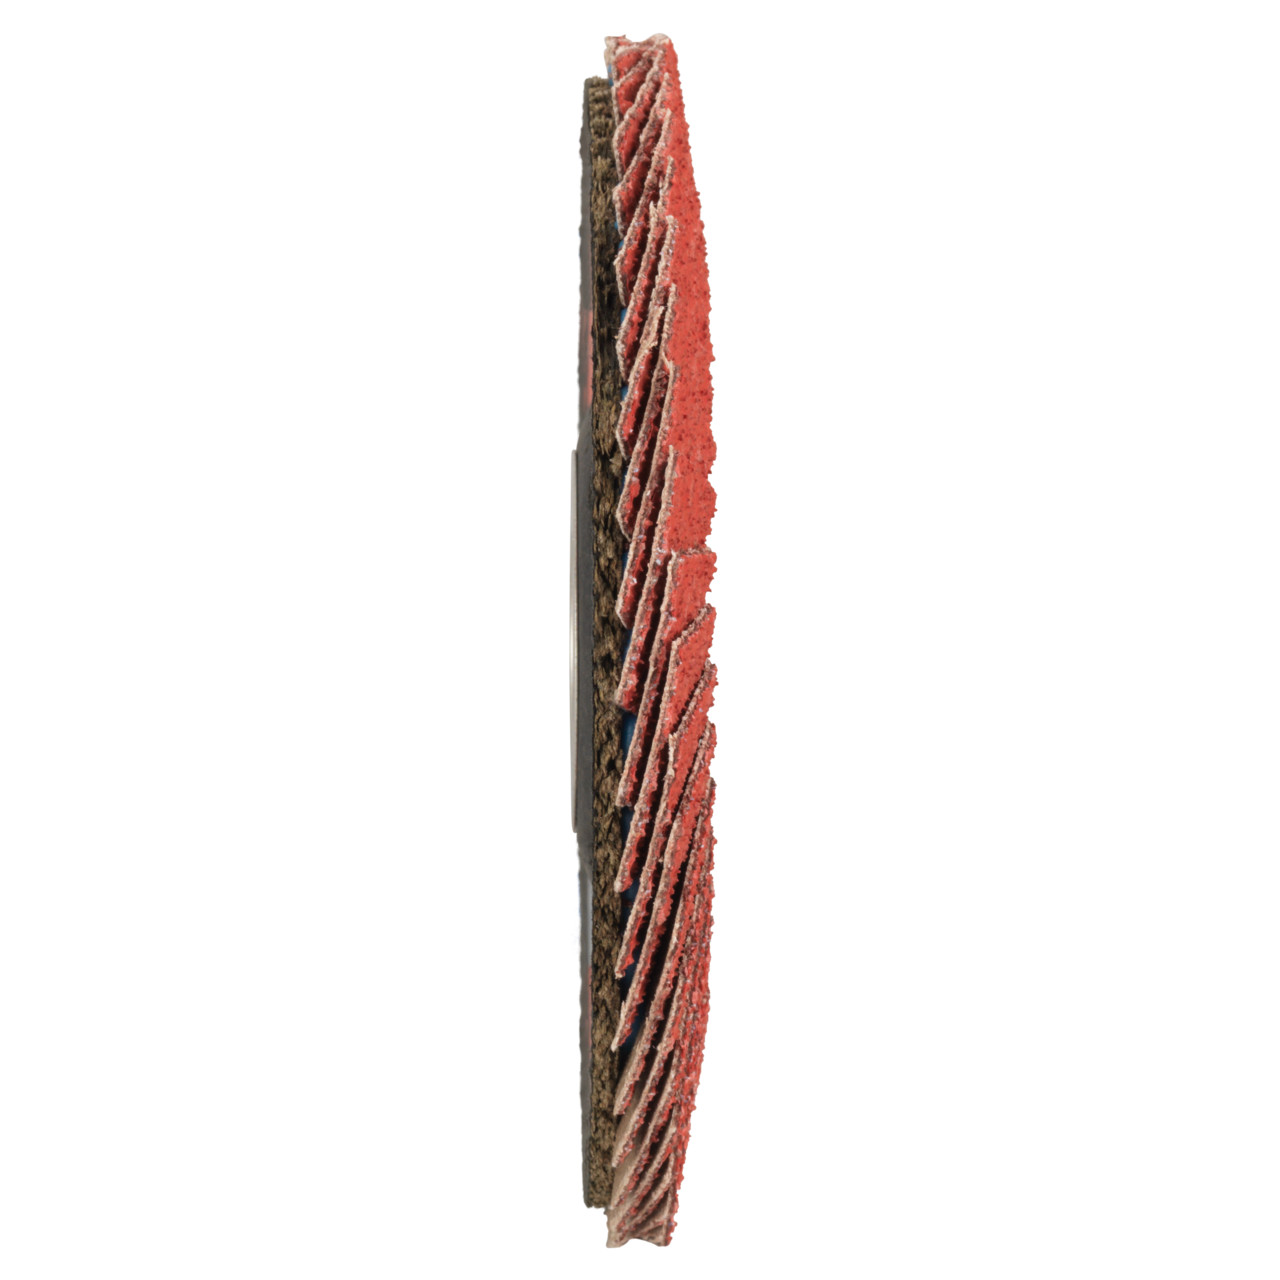 TYROLIT Fächerscheibe DxH 125x22,23 CERAMIC für Edelstahl, P80, Form: 28A - gerade Ausführung (Glasfaserträgerkörperausführung), Art. 34166688